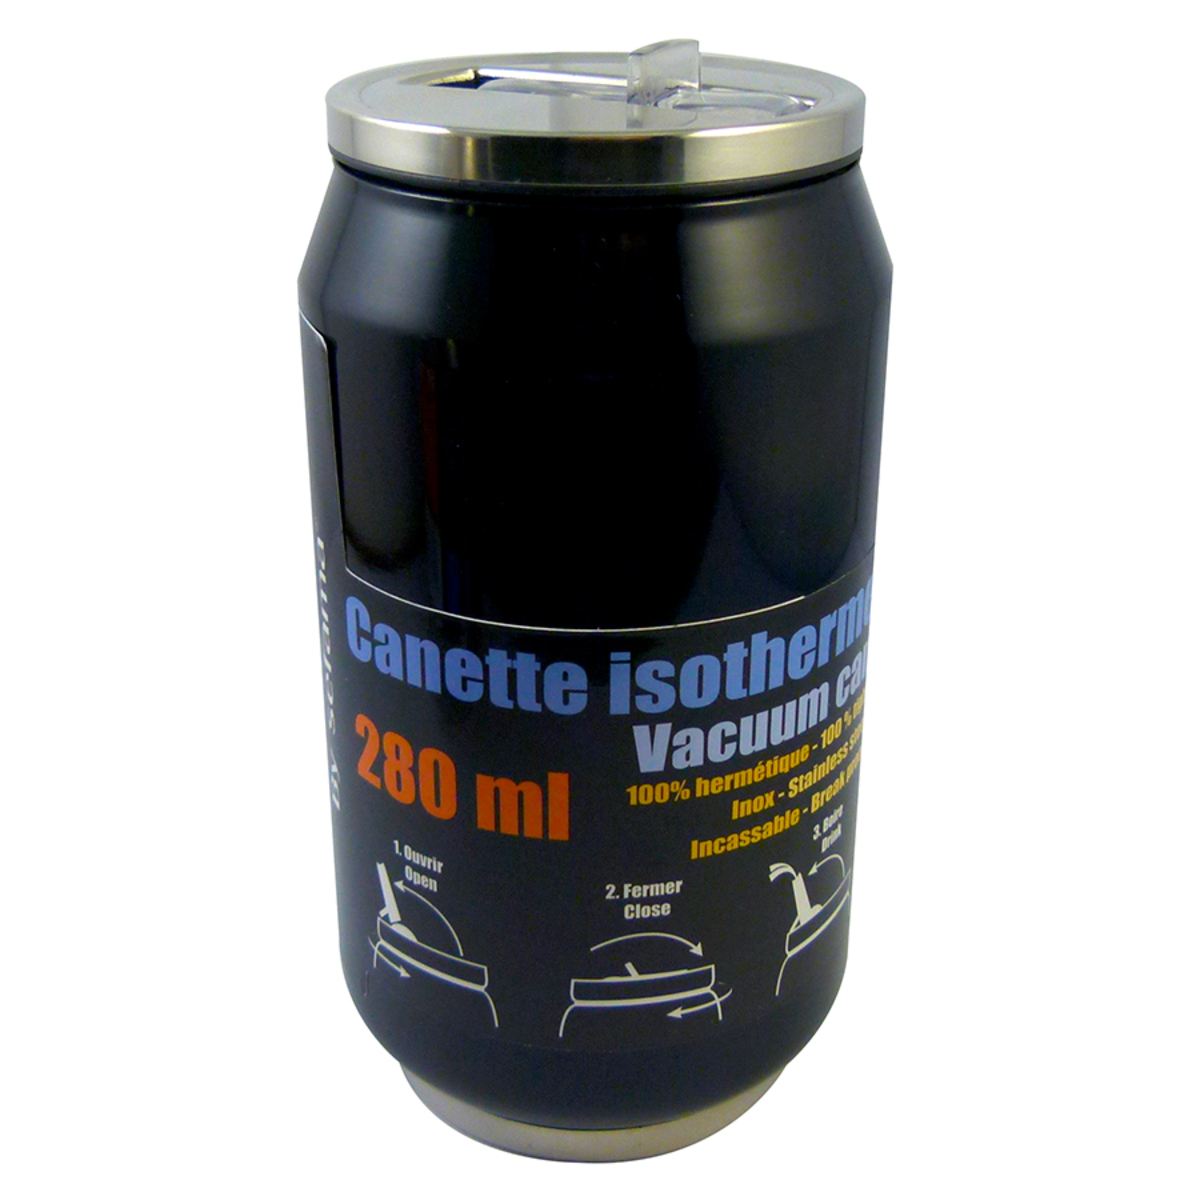 Canette isotherme noire en inox 280 ml